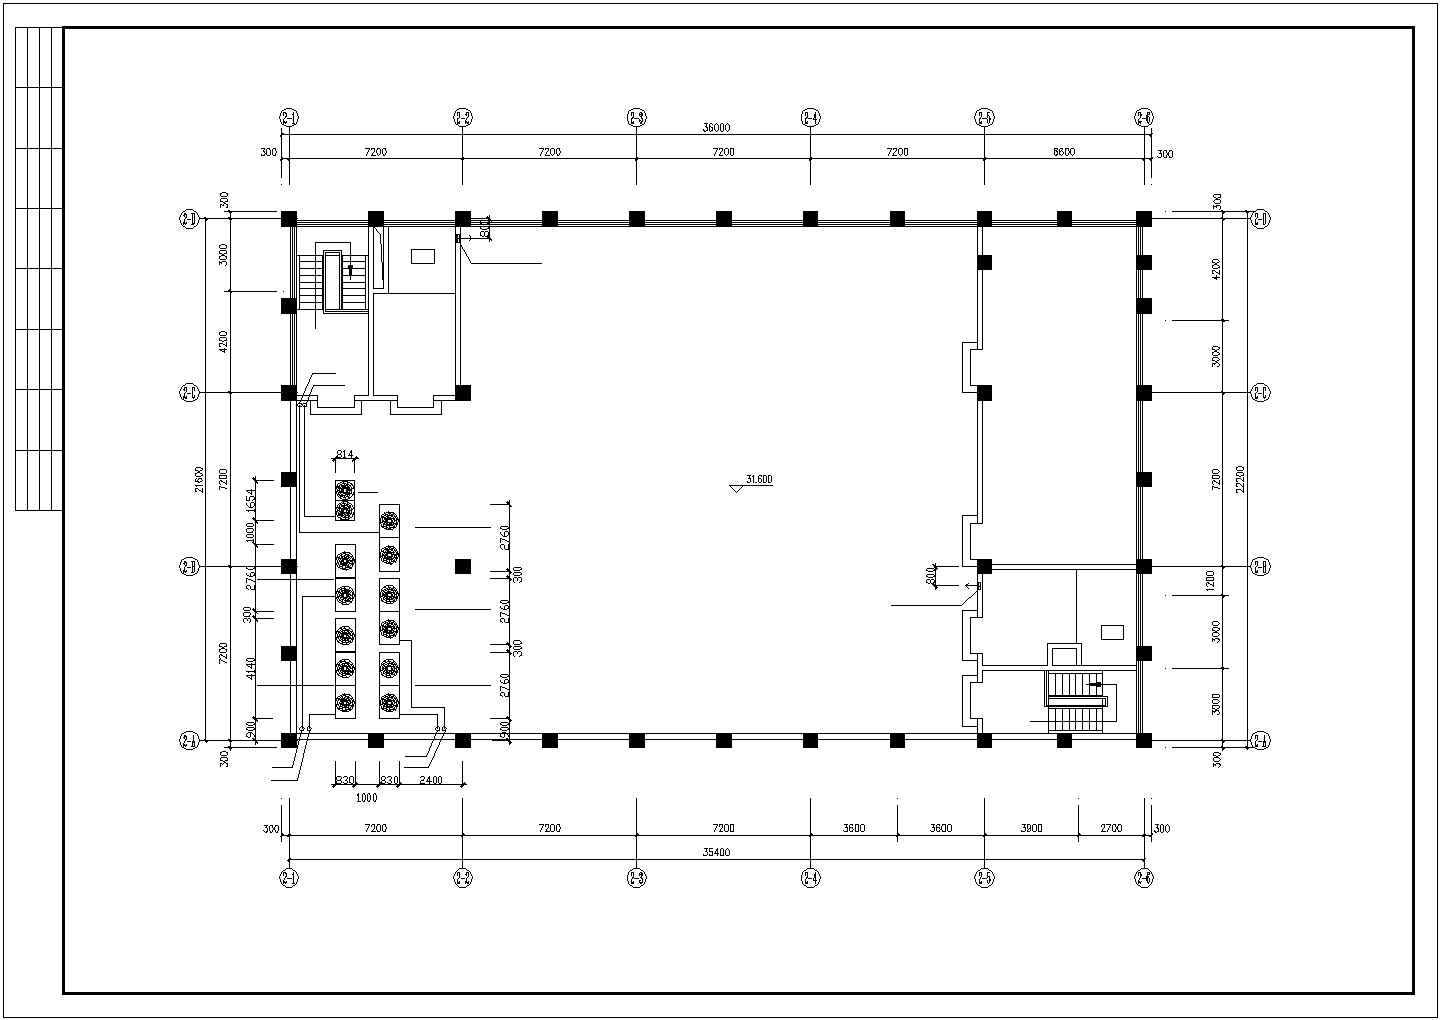 某国际庄市图书馆全套空调设计cad施工图(含照明平面图)